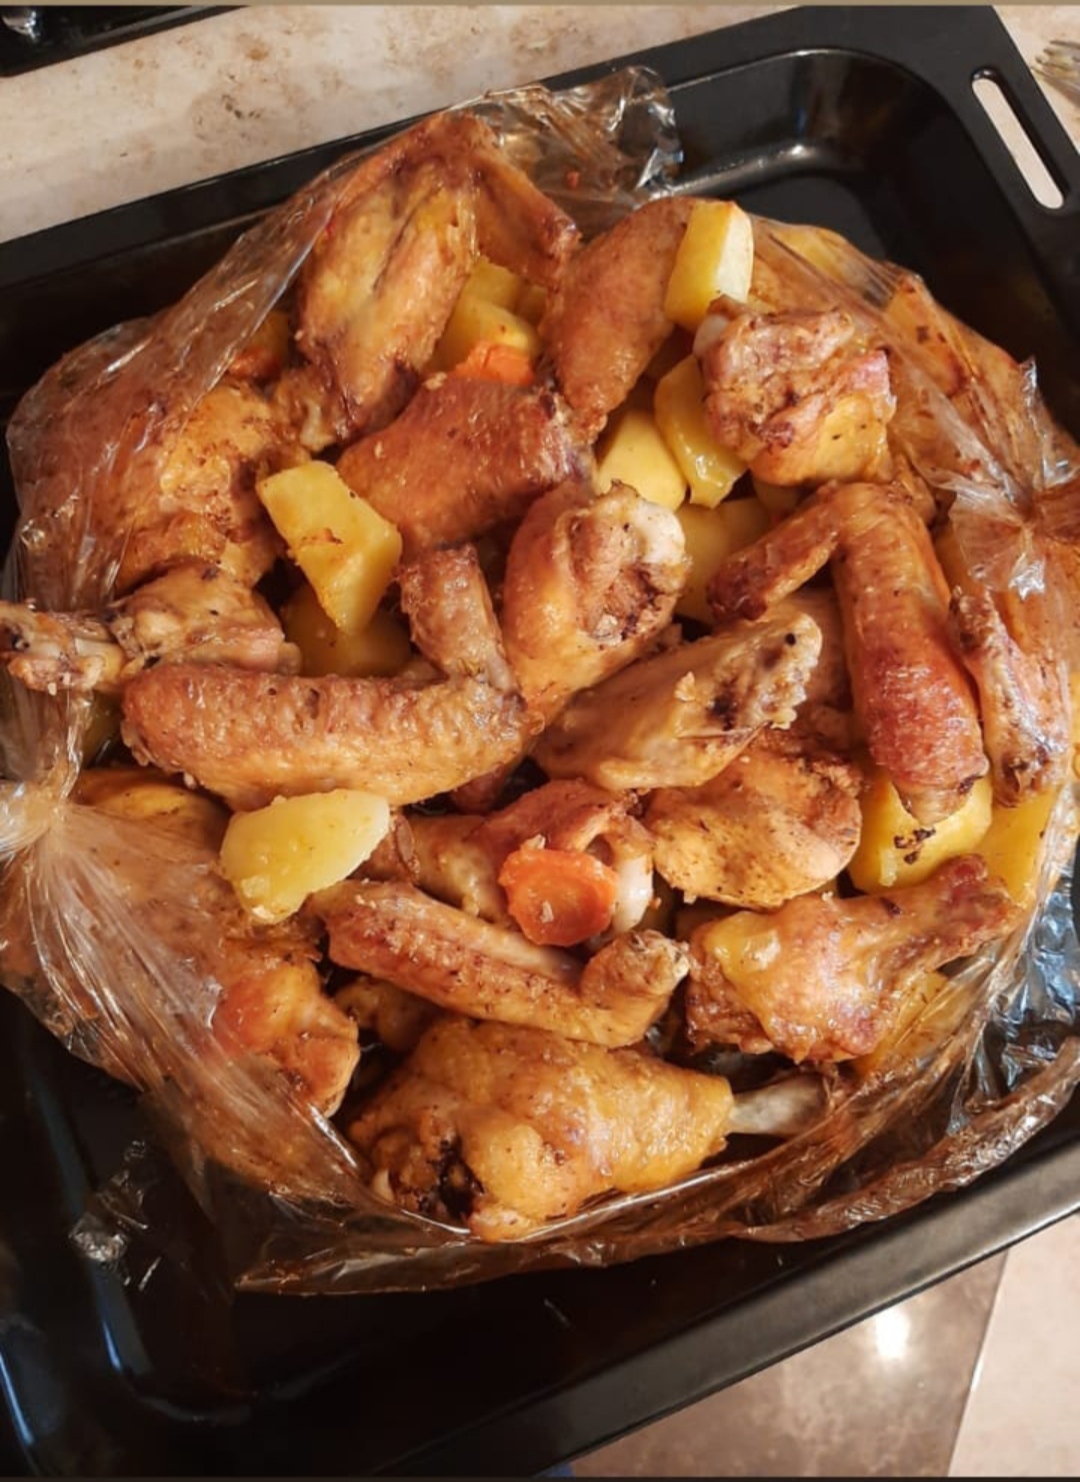 Курица с картофелем, запеченные в «рукаве»